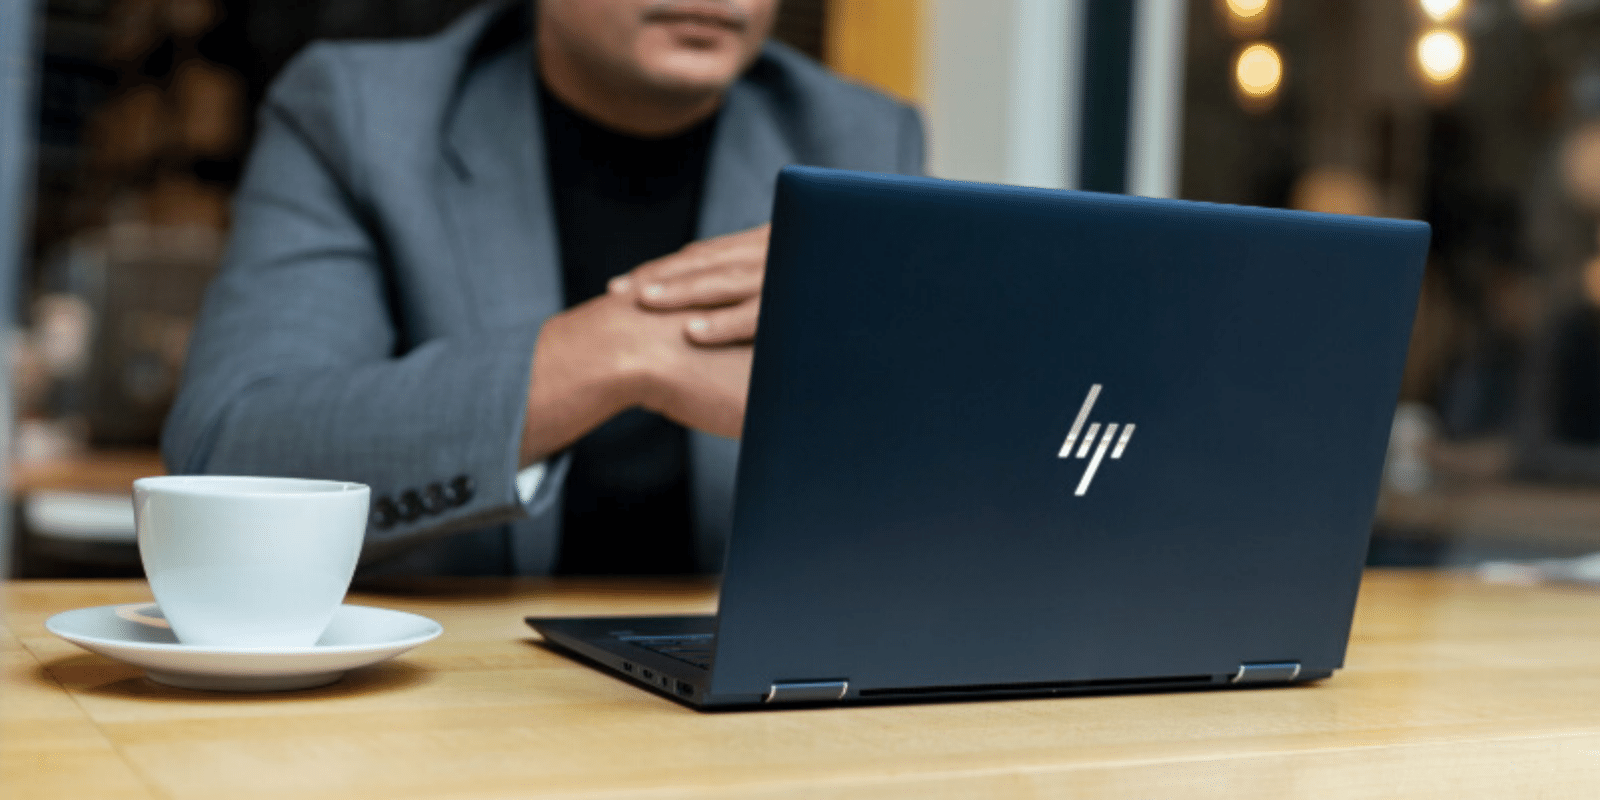 Dernier ordinateur portable ultrafin signé HP, l'Elitebook Dragonfly est à surveiller du prêt en ces jours de Black Friday et de Cyber Monday 2019. ©HP Store